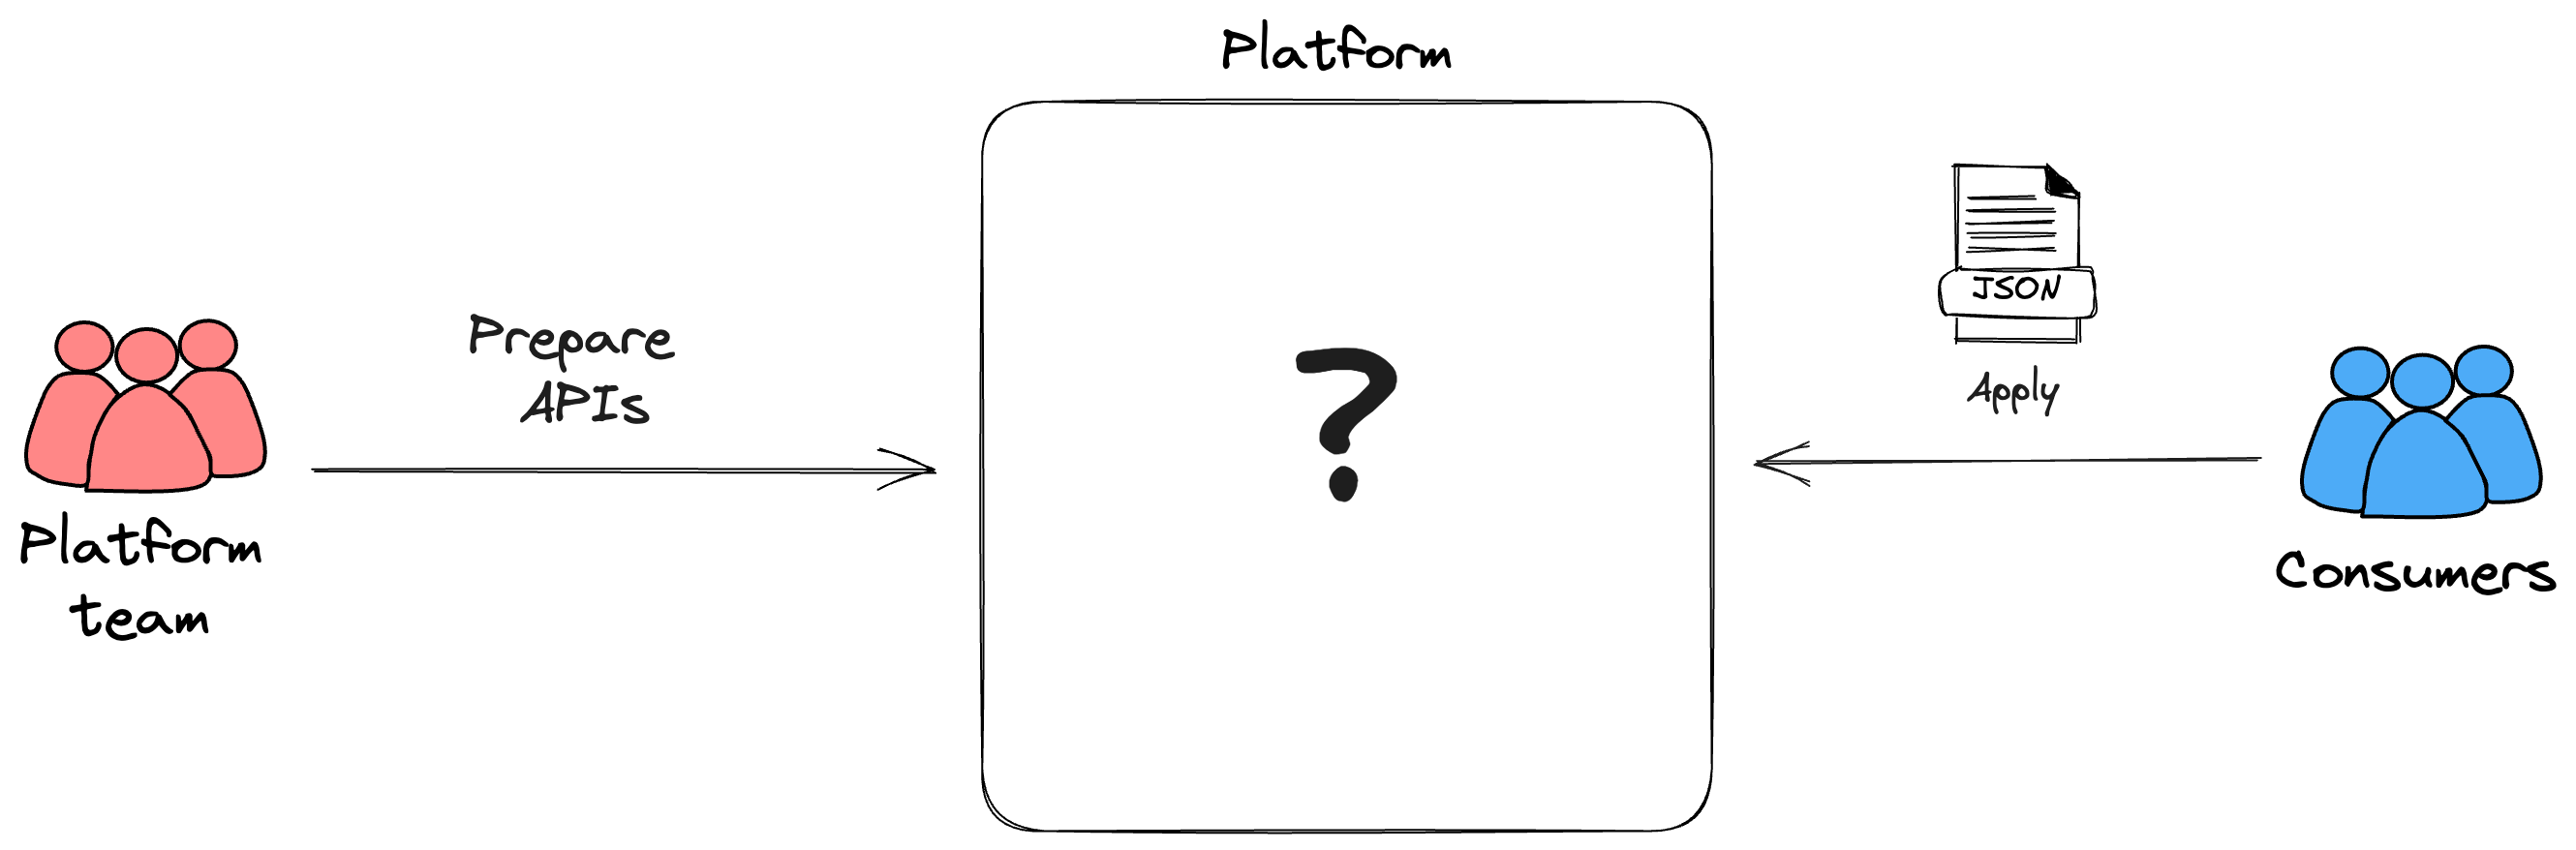 Platform APIs